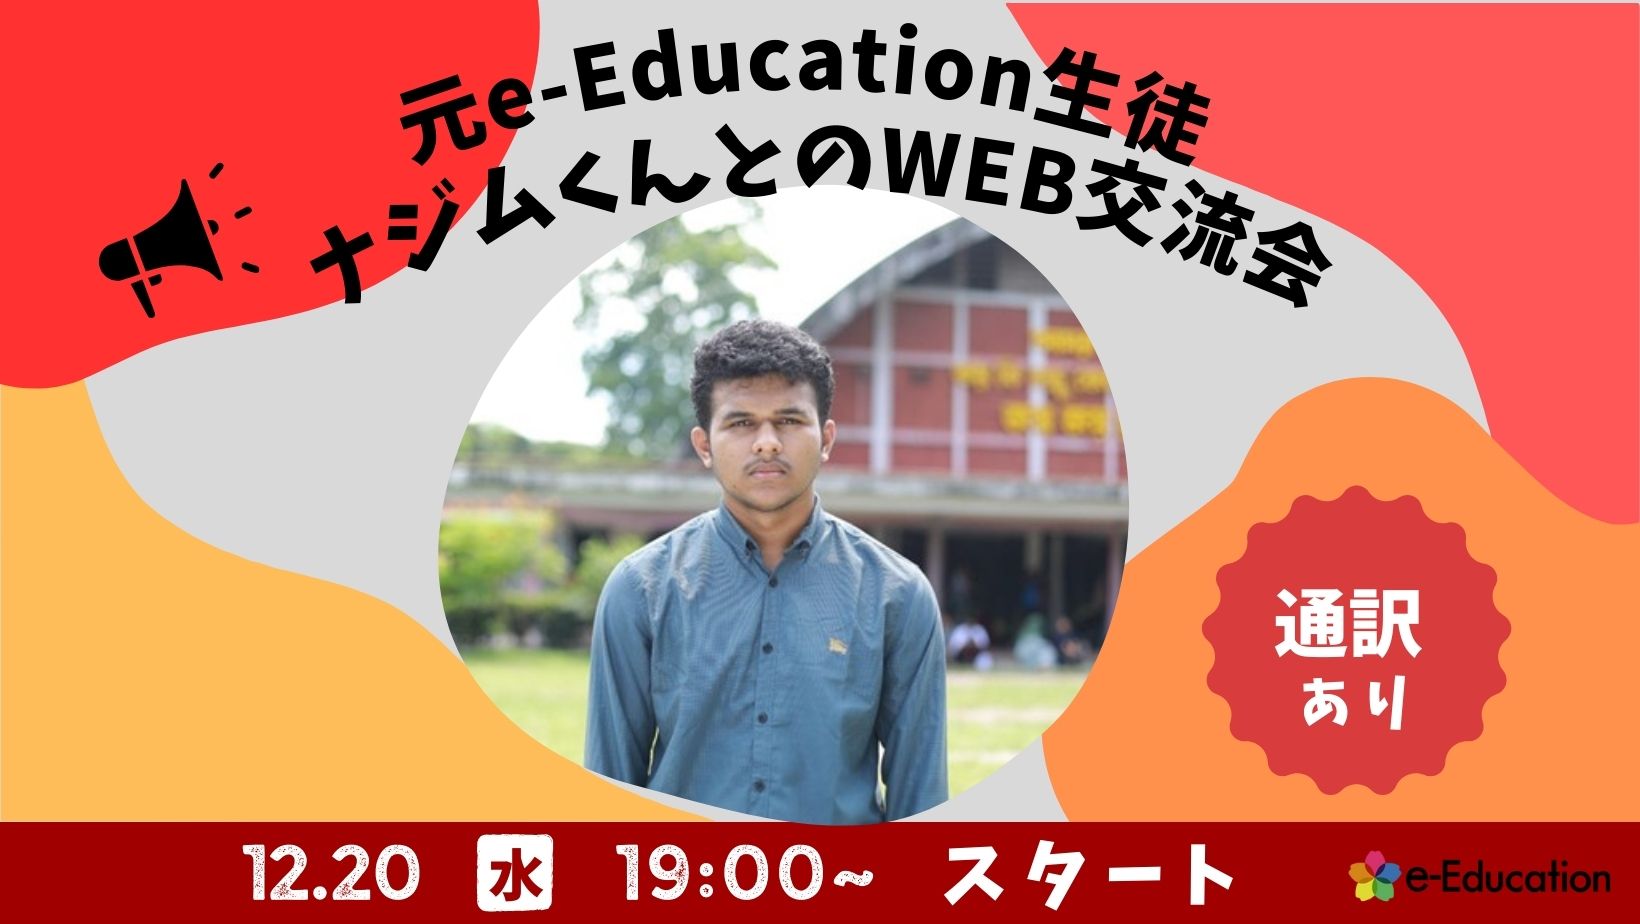 【イベント】元e-Education生徒ナジムくんとのWEB交流会